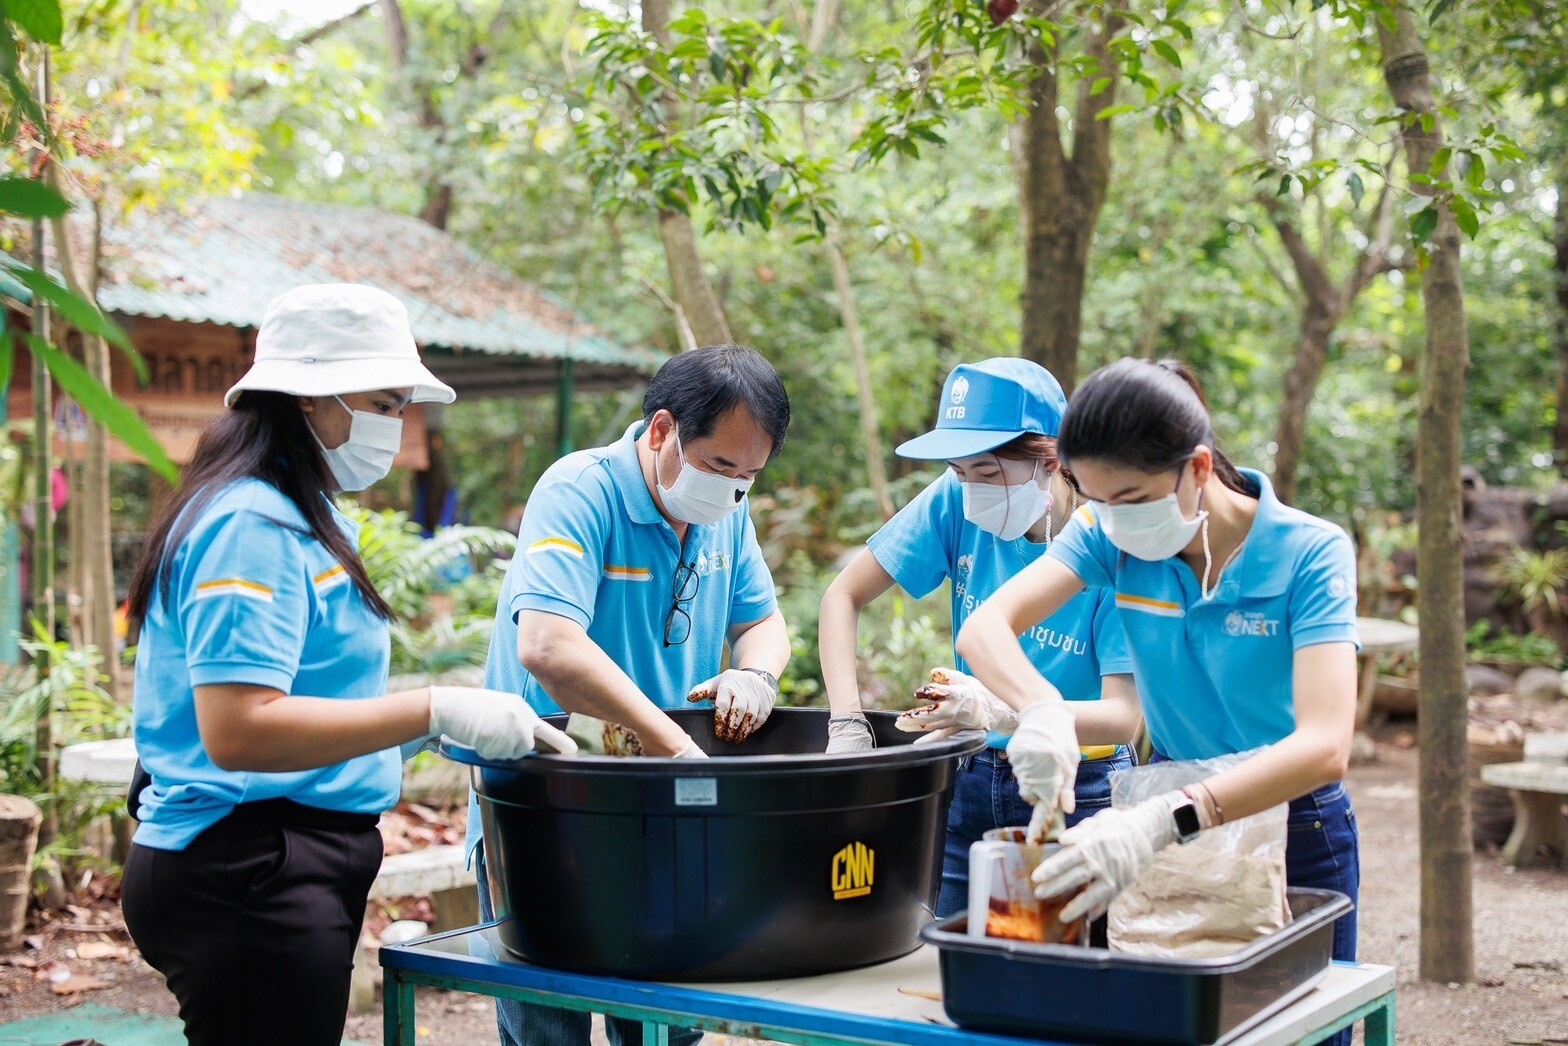 "กรุงไทย" สานพลัง "ชุมชนบางน้ำผึ้ง" ร่วมรักษ์สิ่งแวดล้อม มุ่งสู่ Zero Waste